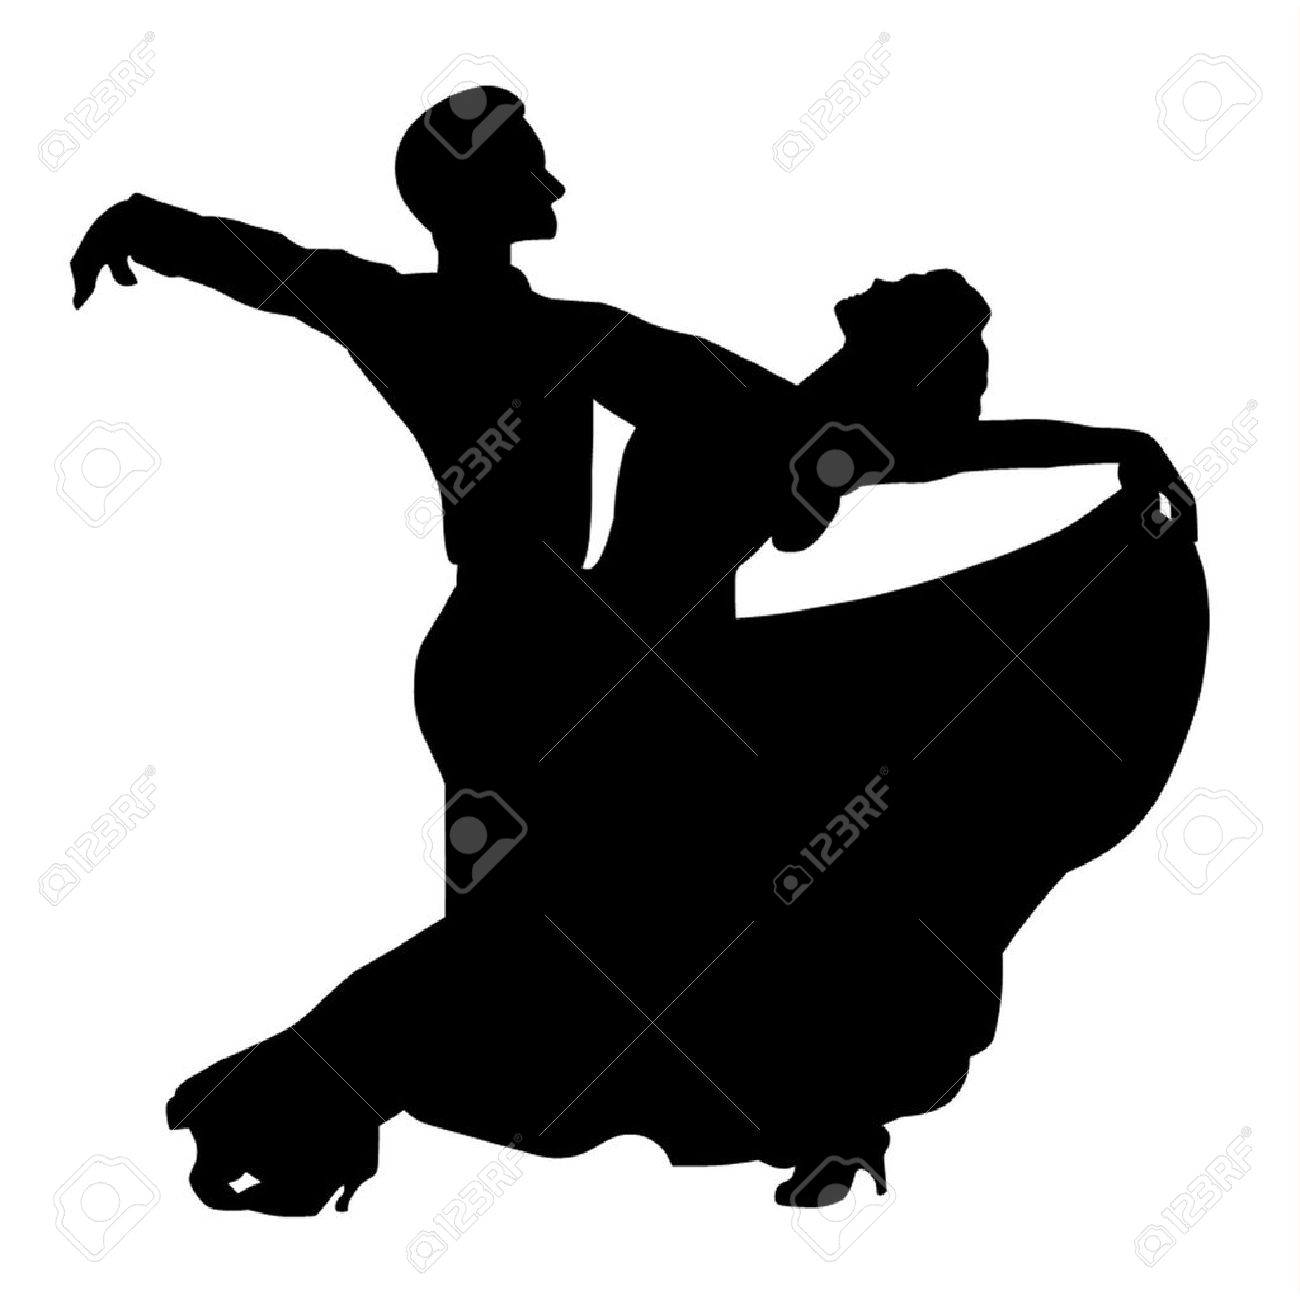 Ballroom Dancing Silhouette At Getdrawings Com Free For